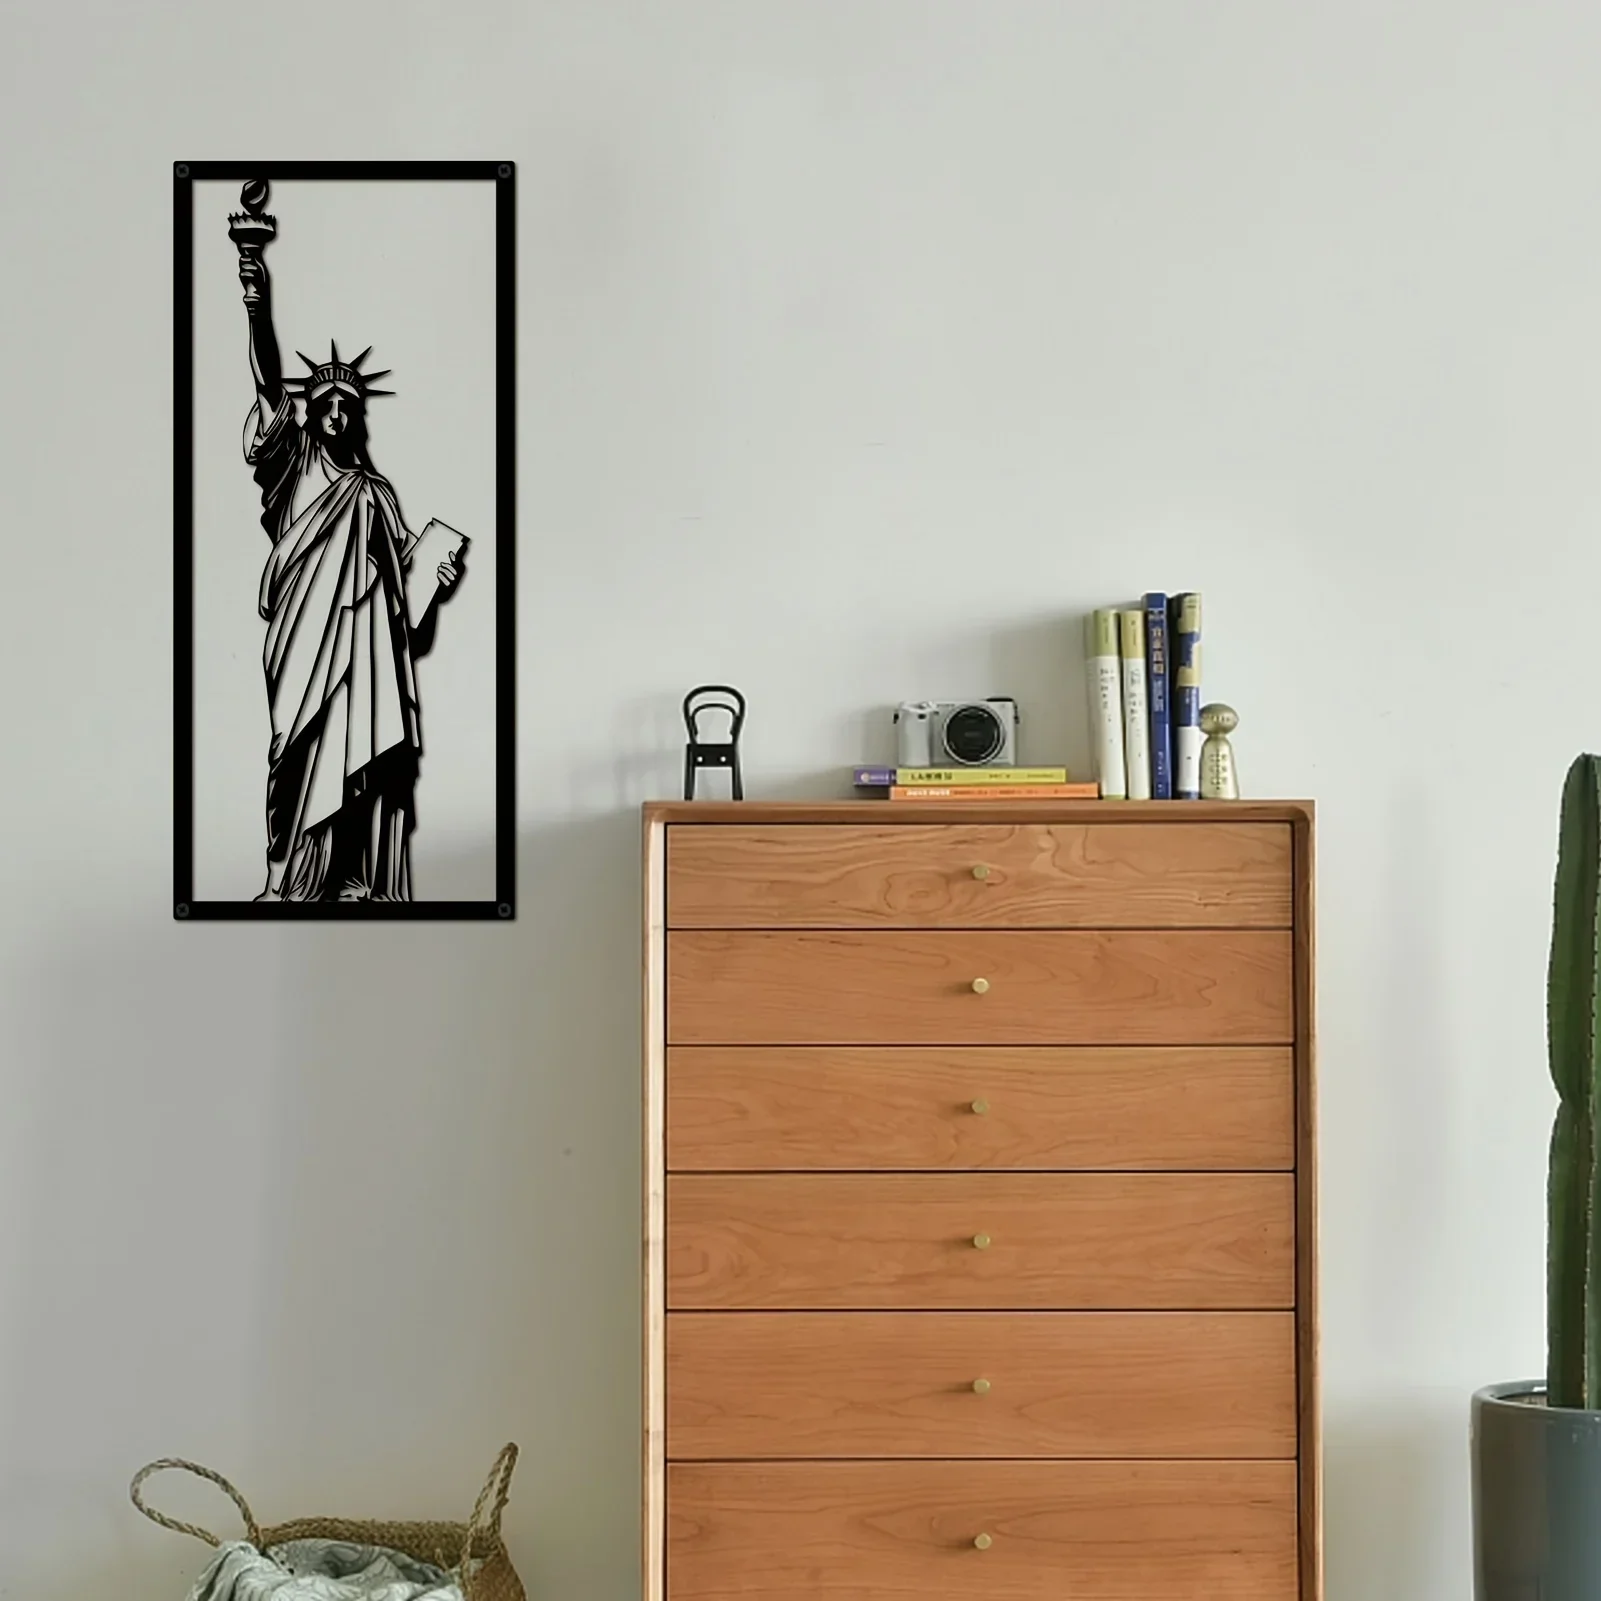 

Металлическая железная Статуя Свободы, настенное украшение в рамке, Неоклассическое стильное украшение для спальни, офиса, дивана